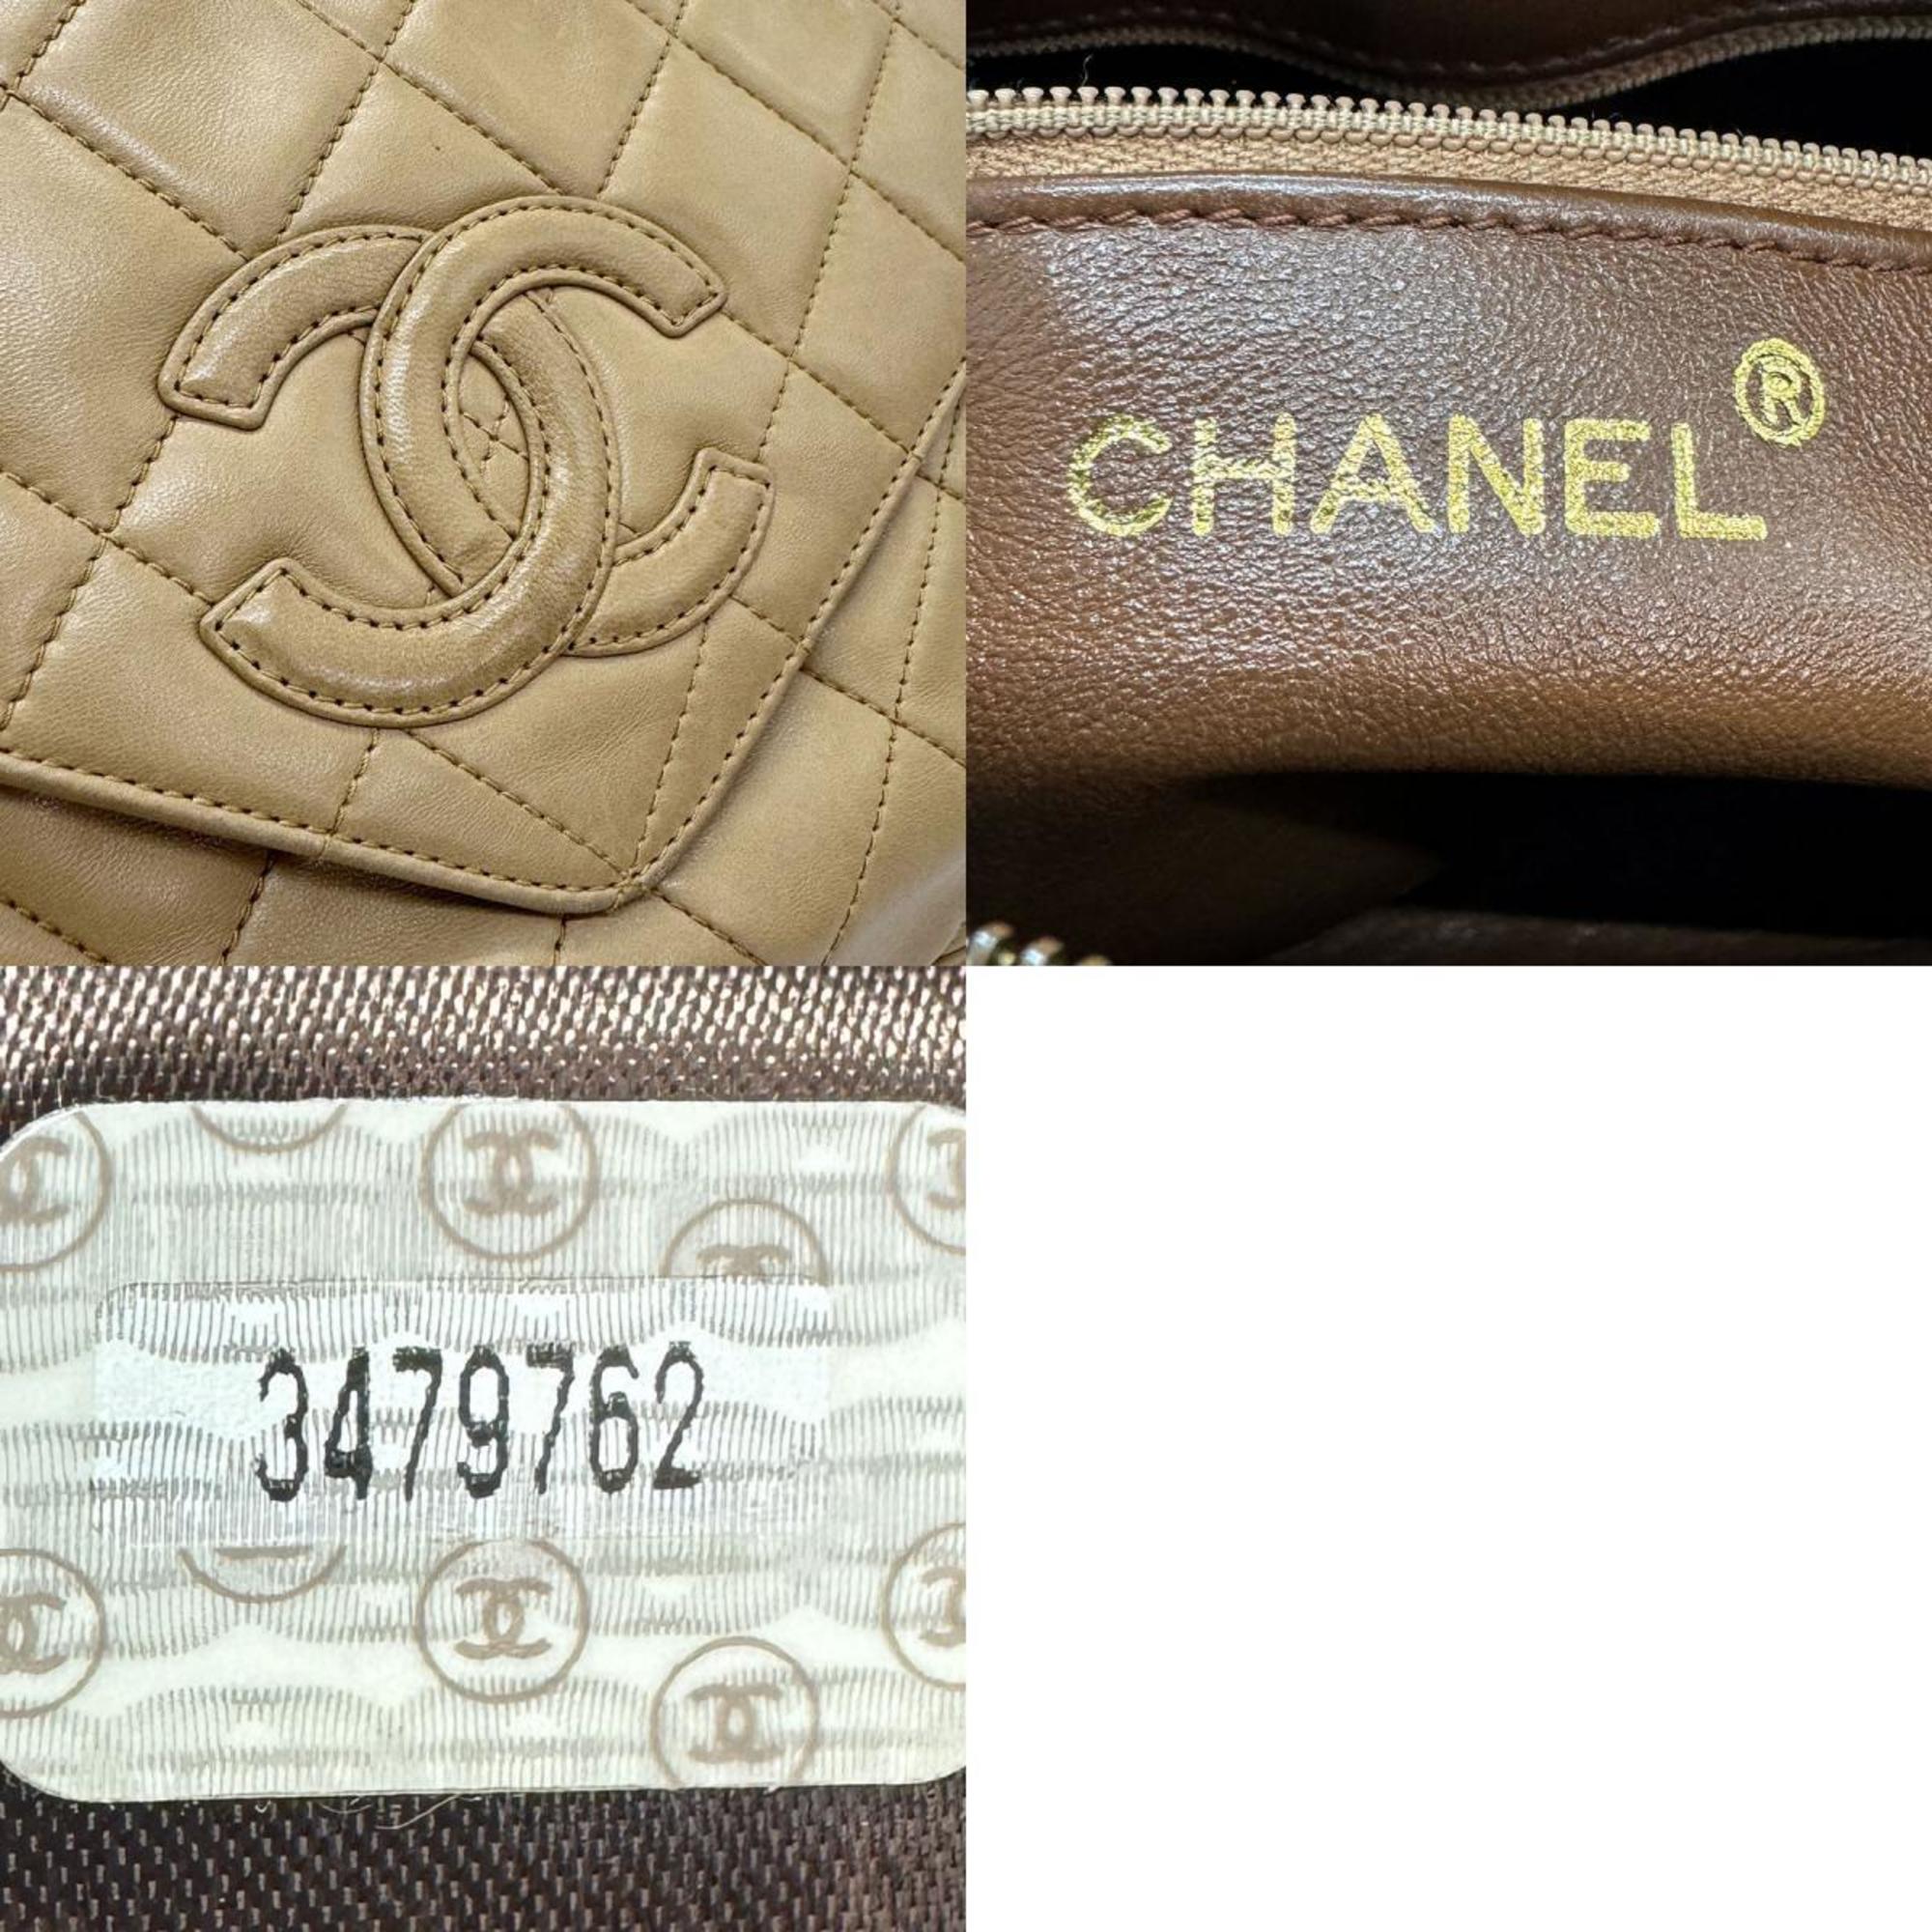 CHANEL shoulder bag, lambskin, beige, women's, z0790